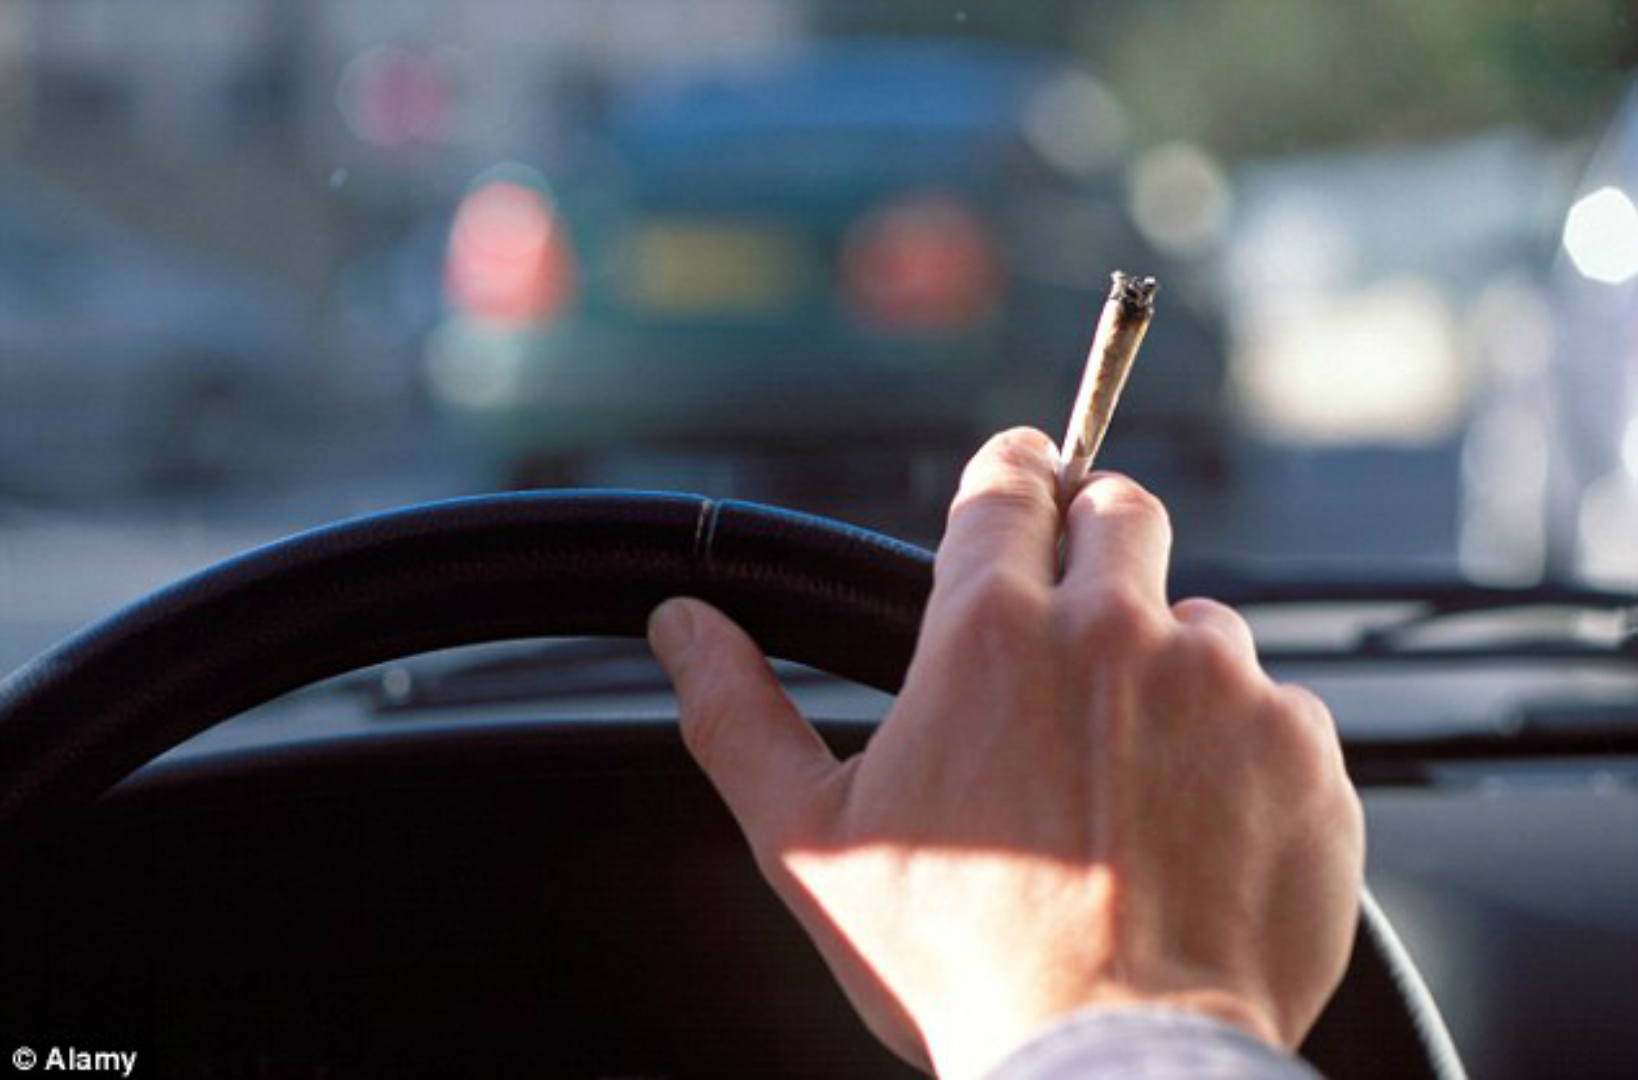 Gli effetti della marijuana sulla capacità di guida